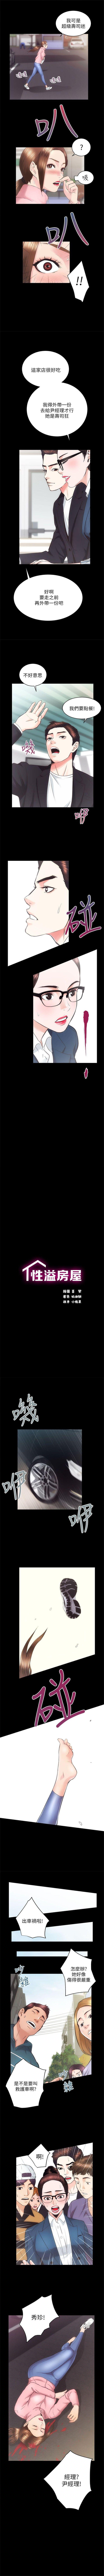 性溢房屋 1-20 中文翻译（应求更新中） 108